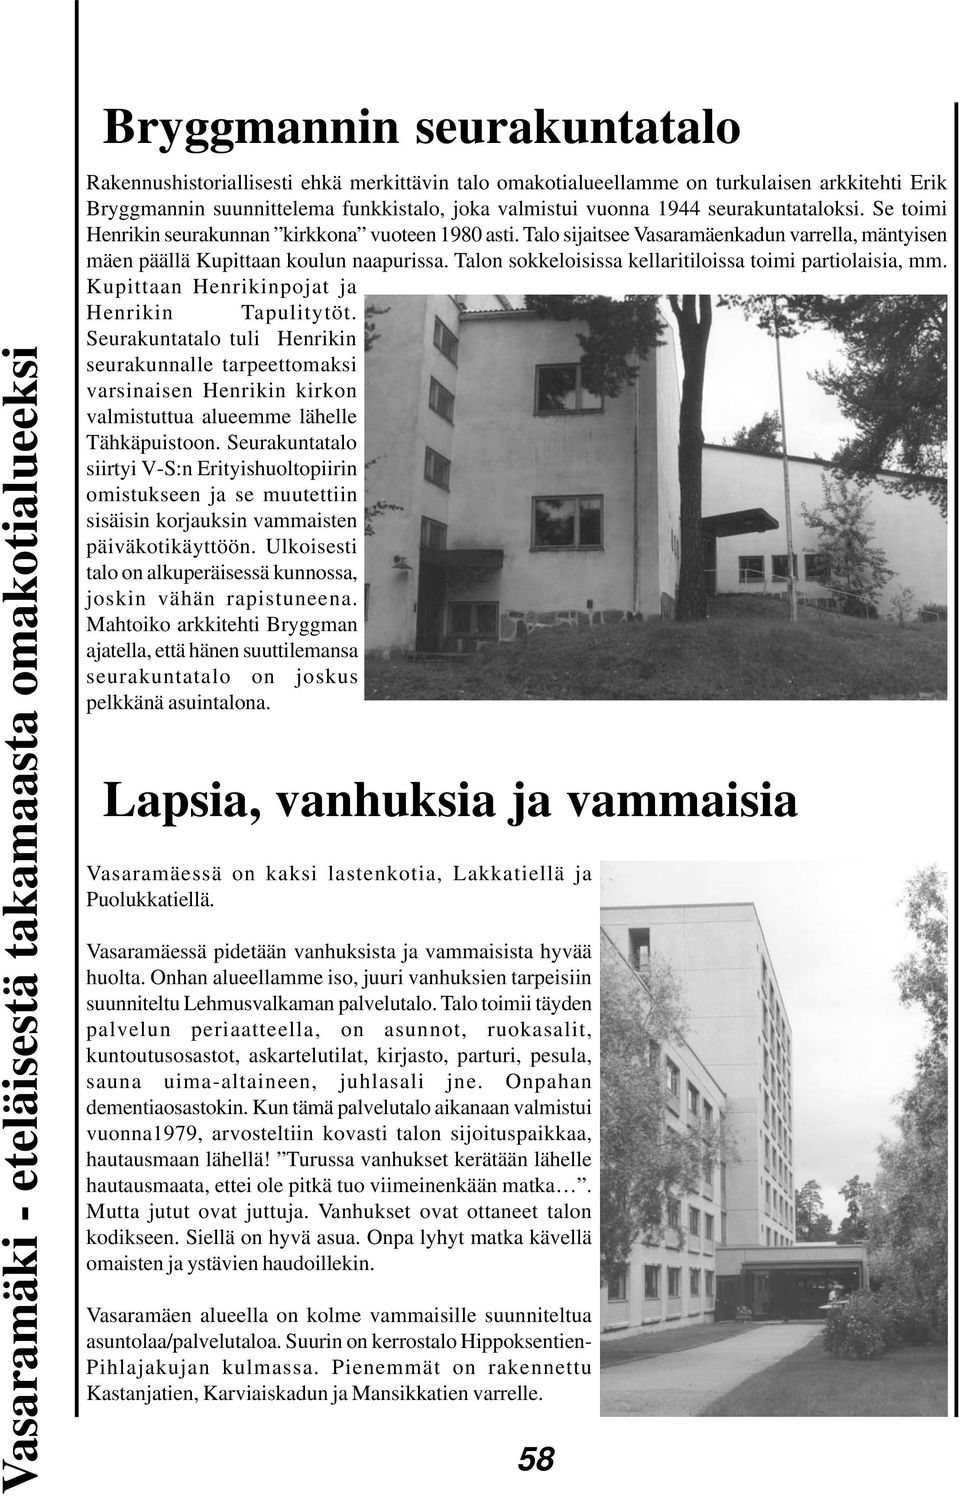 Talo sijaitsee Vasaramäenkadun varrella, mäntyisen mäen päällä Kupittaan koulun naapurissa. Talon sokkeloisissa kellaritiloissa toimi partiolaisia, mm. Kupittaan Henrikinpojat ja Henrikin Tapulitytöt.